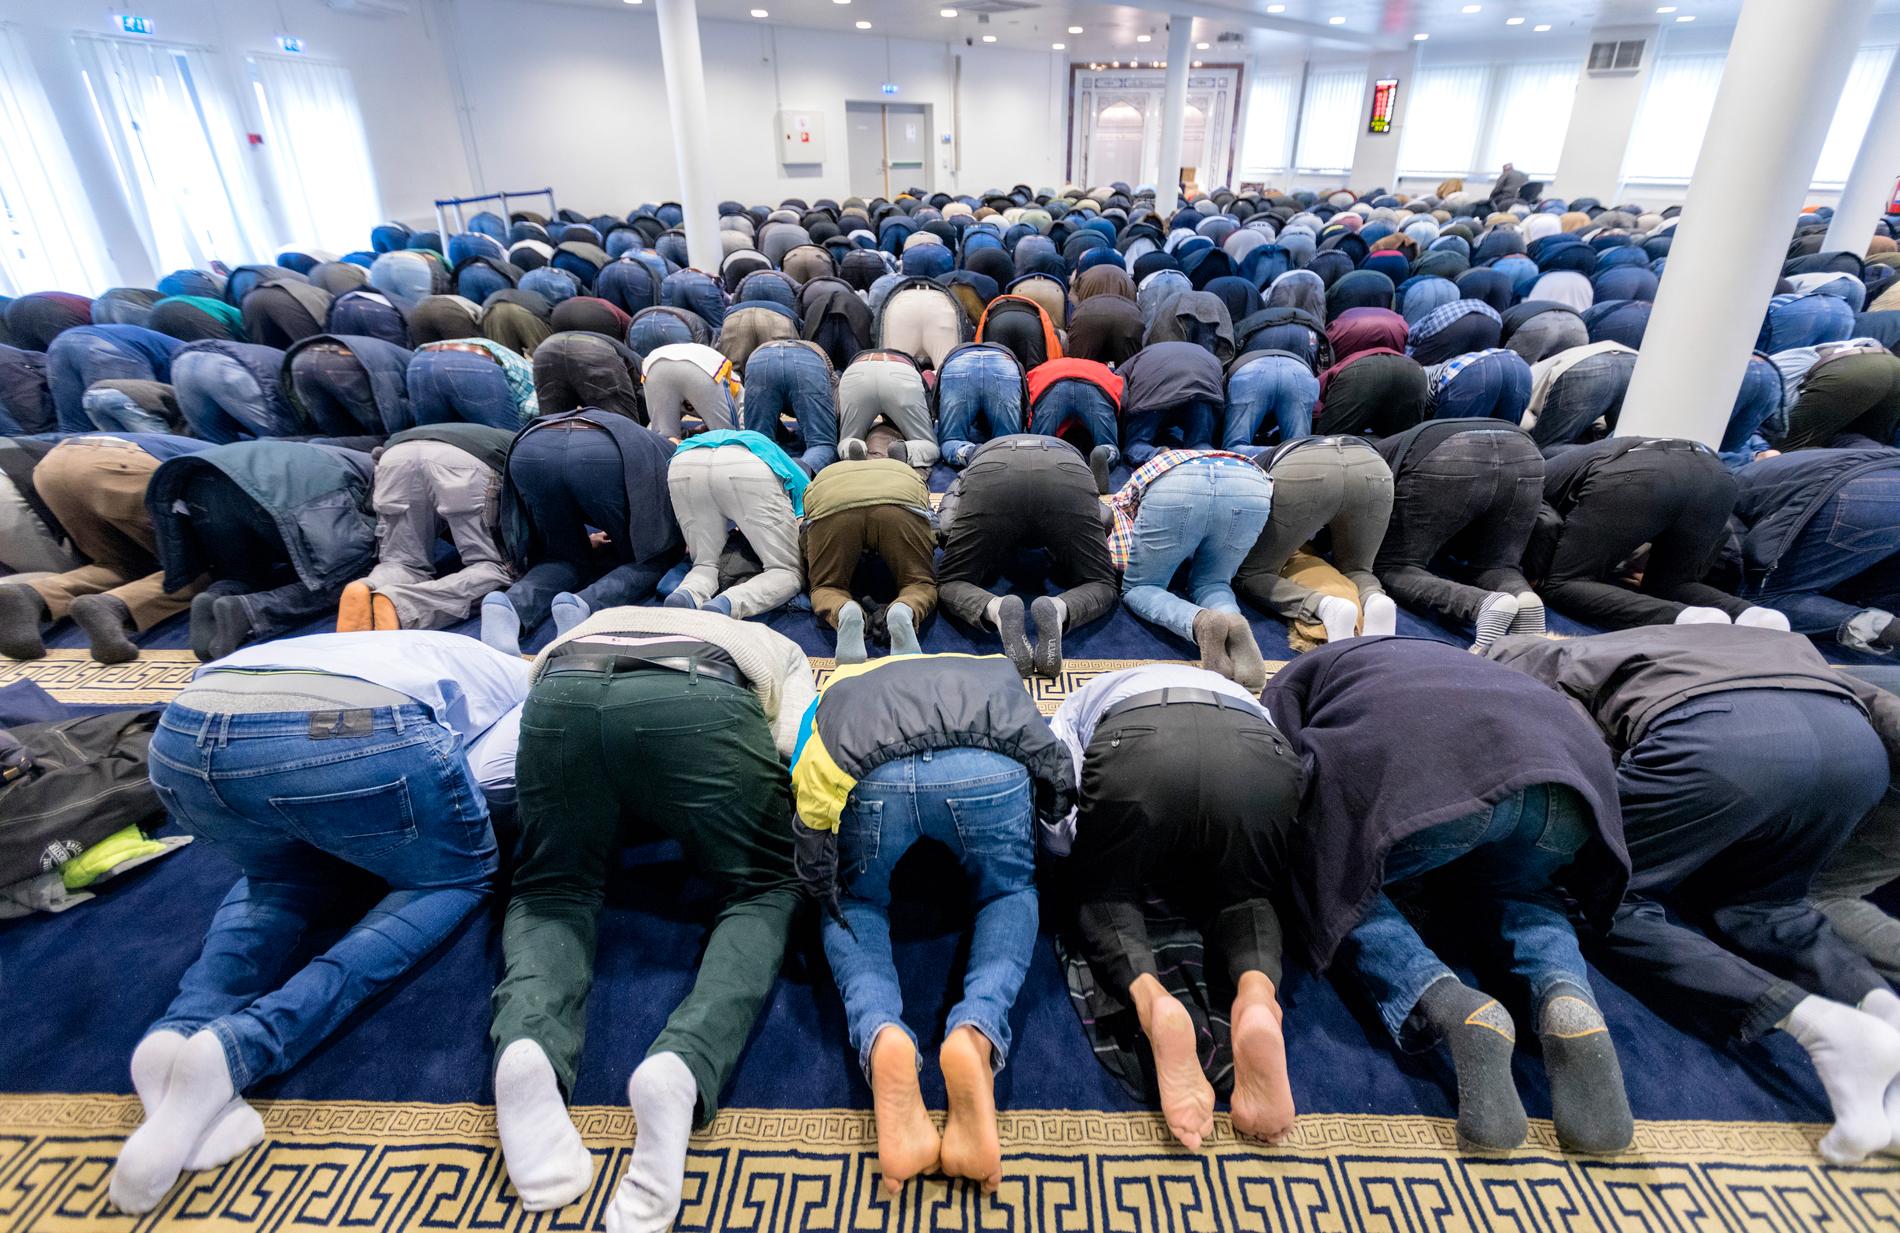 Muslimer under en fredagsbön i Islamic Cultural Centre i Oslo. En ny studie visar att muslimer födda i väst stödjer extremism i större utsträckning än muslimer som är uppvuxna på annat håll. Arkivbild.